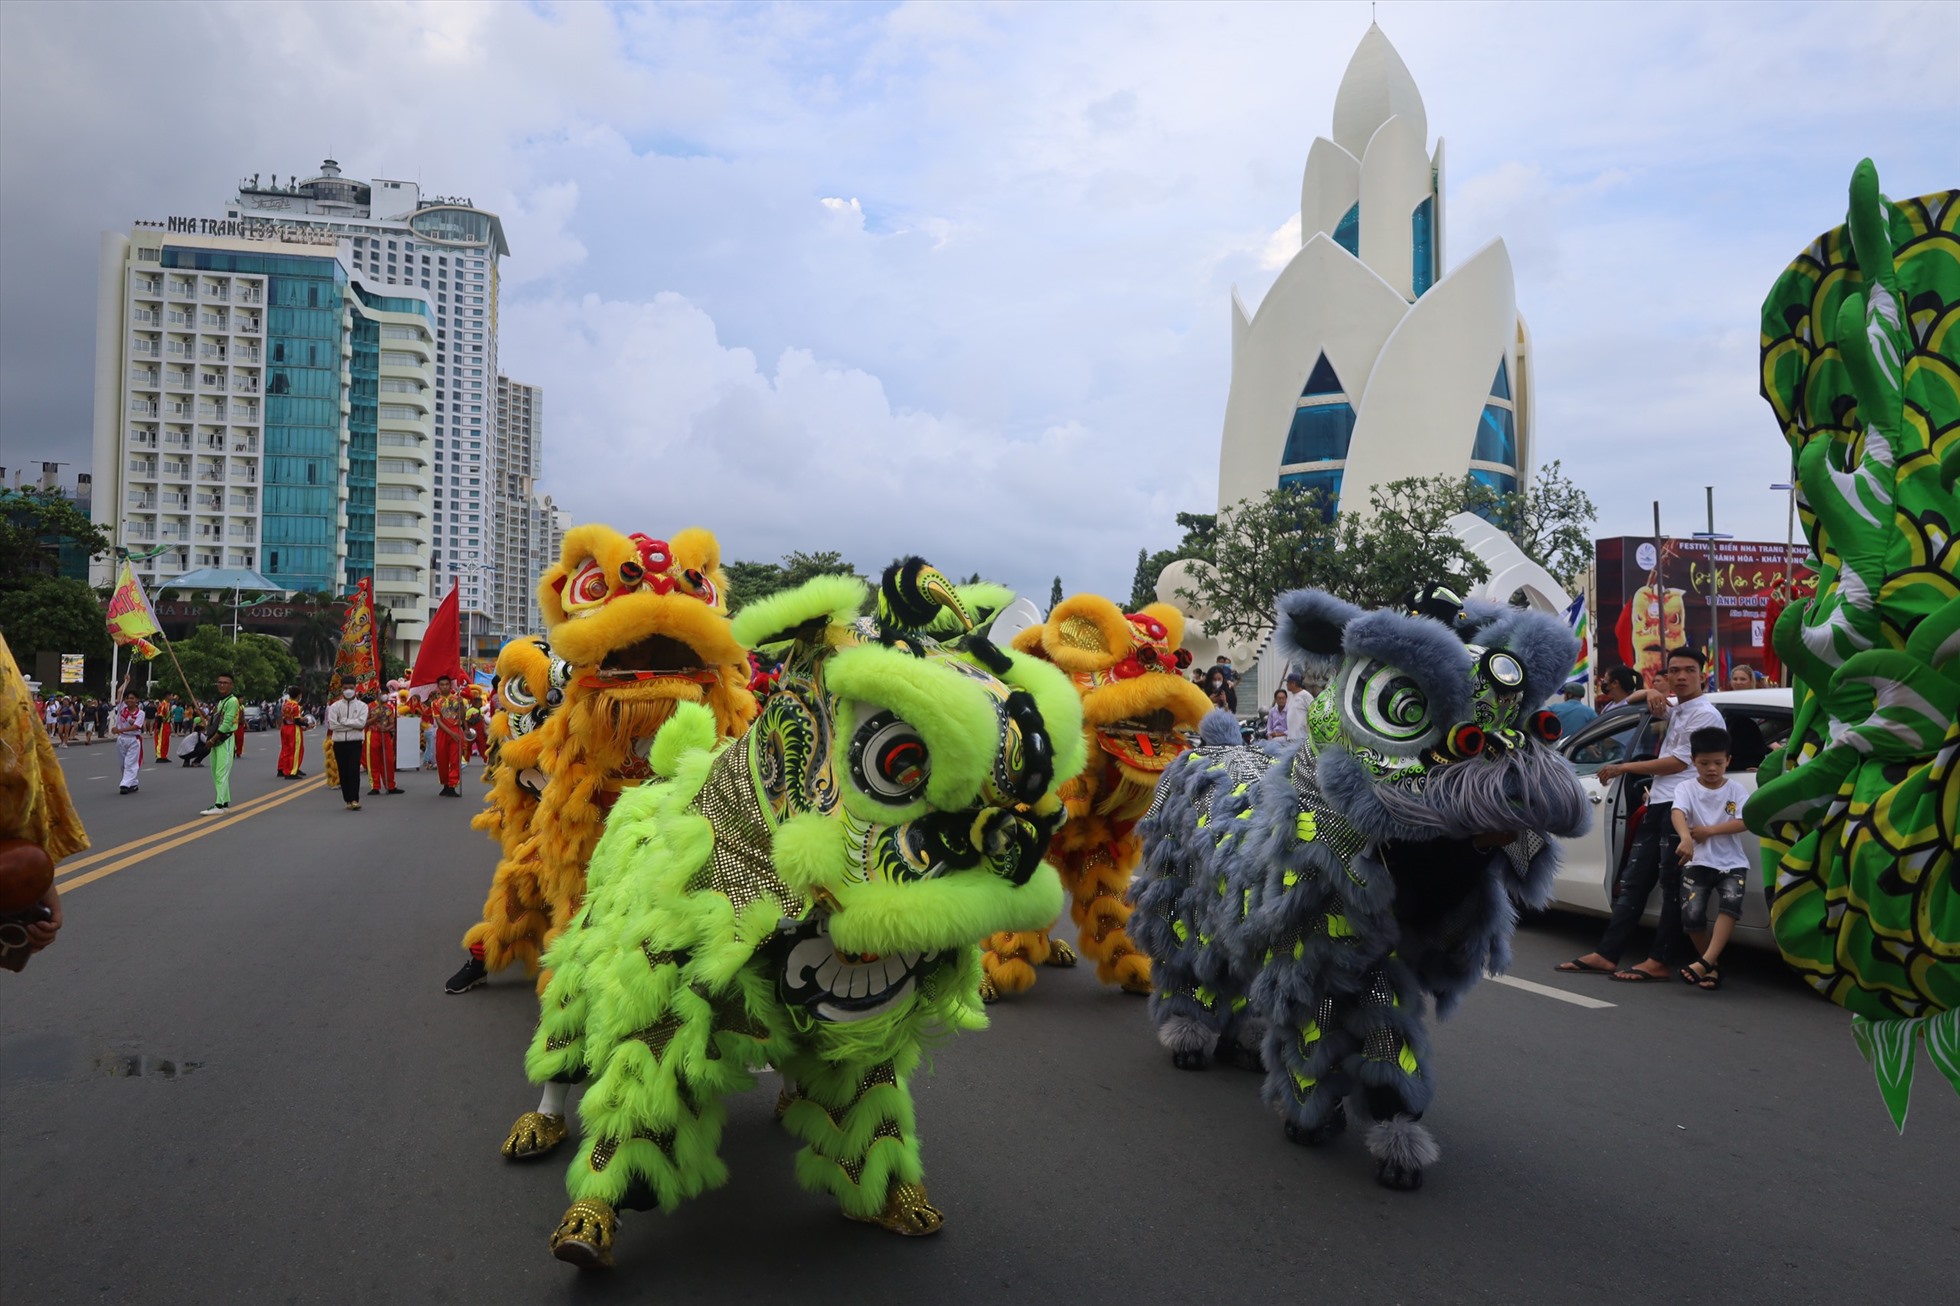 Lễ hội Lân – Sư – Rồng đường phố Nha Trang được tổ chức lần đầu tiên năm 2013 tại kì Festival biển Nha Trang – Khánh Hòa.